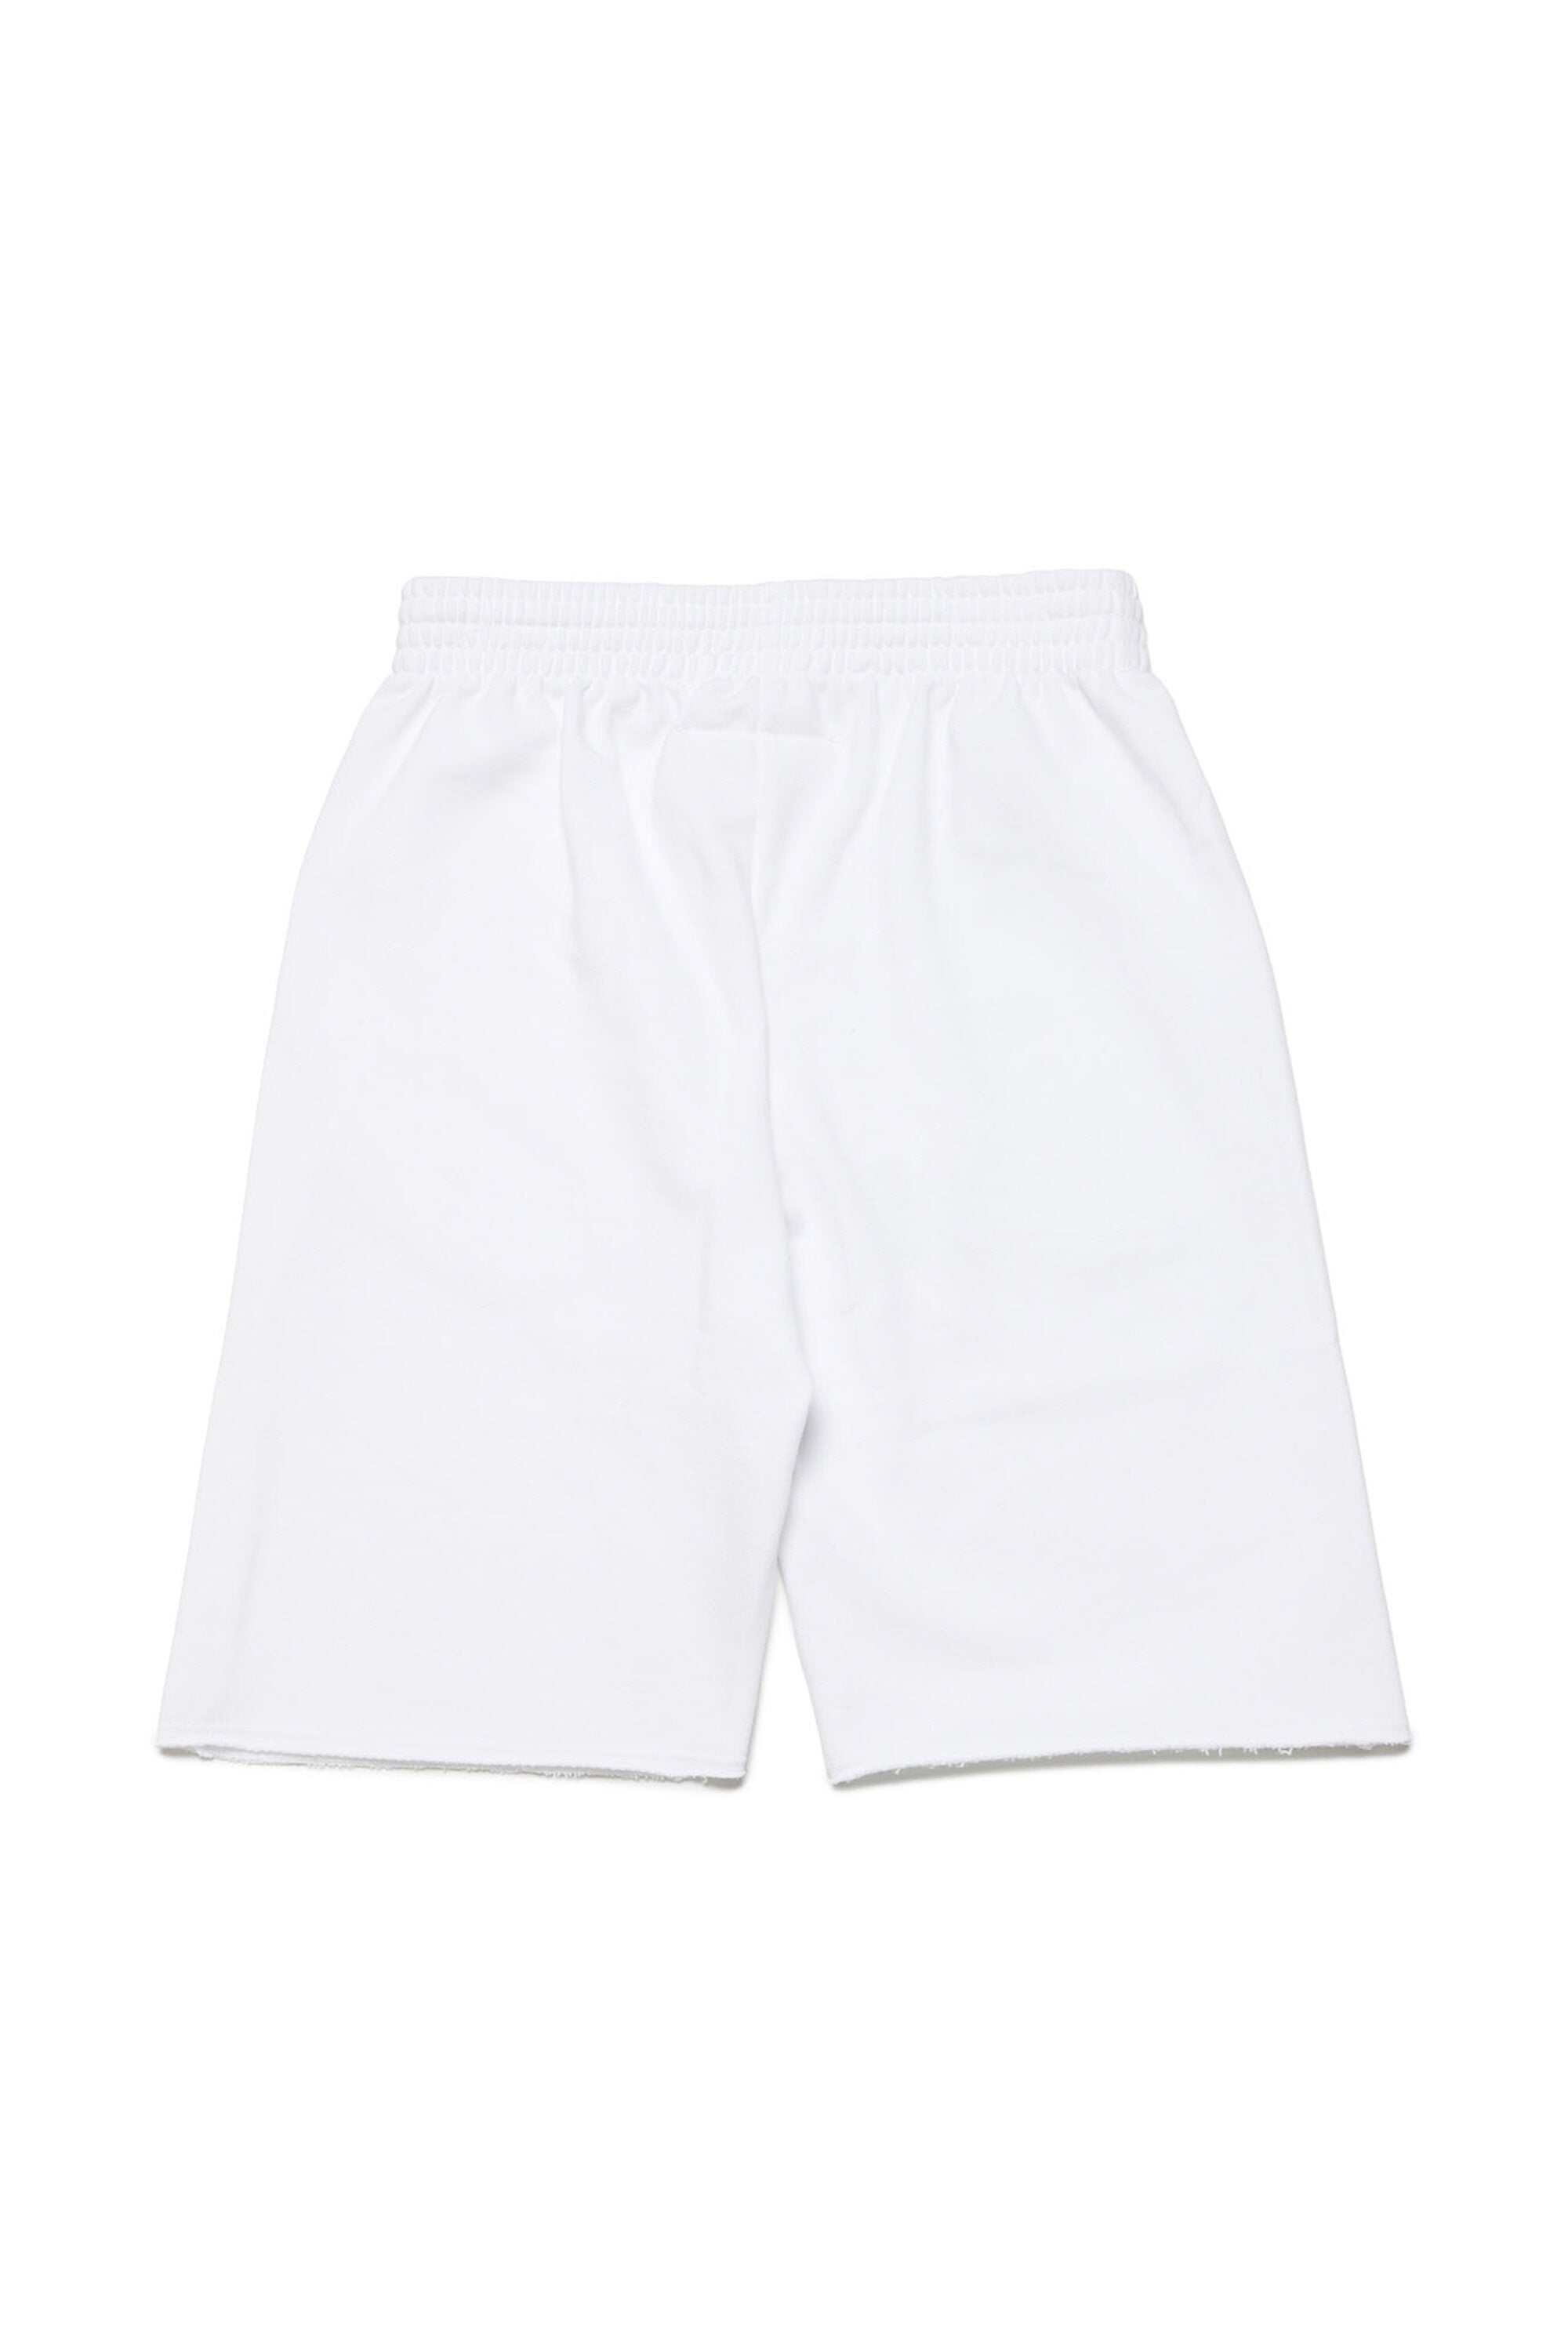 Pantalones cortos en chándal con logotipo efecto Píxel